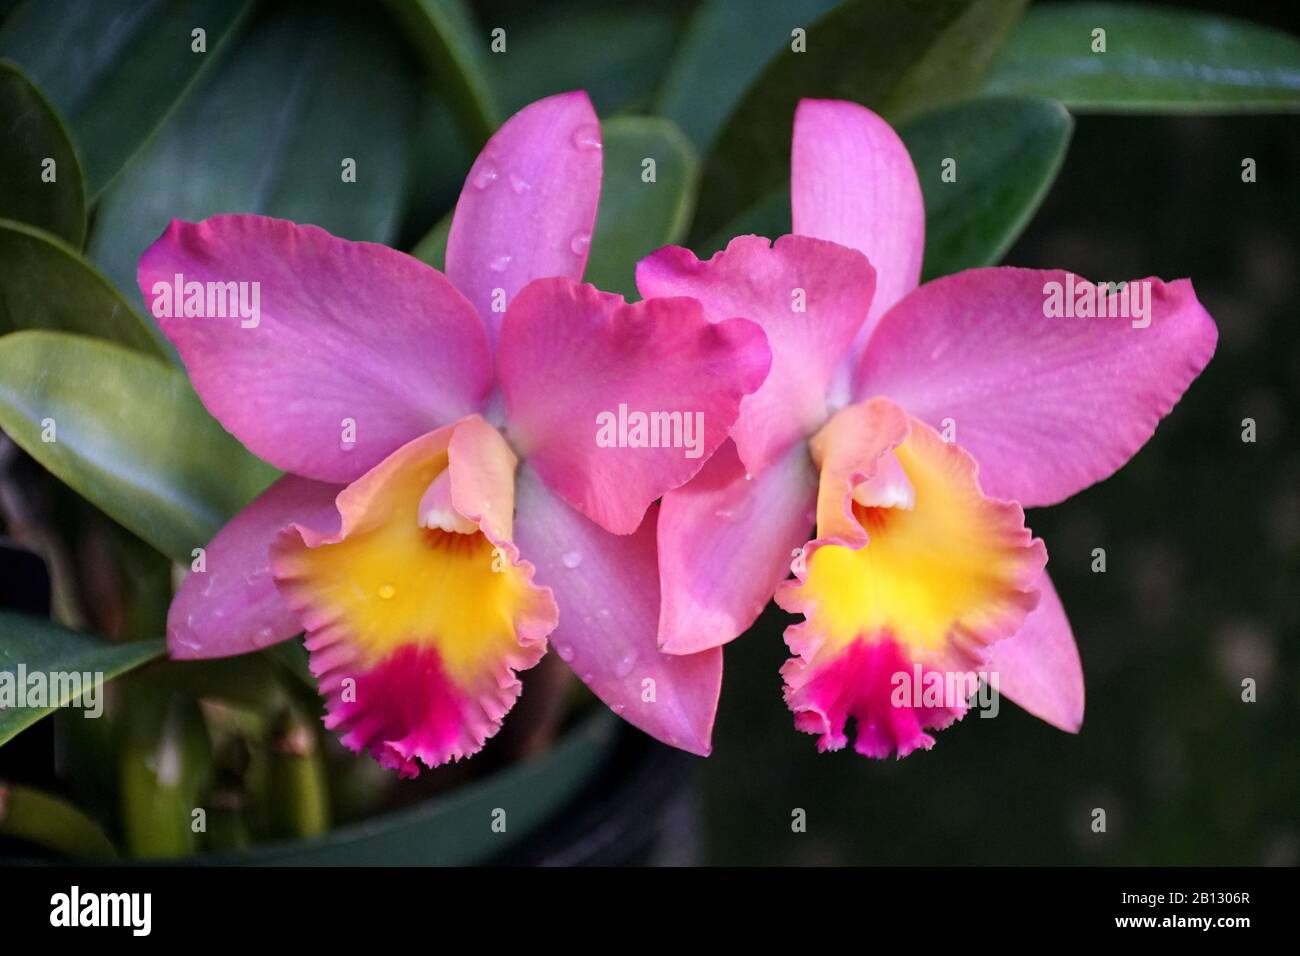 Beautiful light purple and yellow cattleya orchids Stock Photo